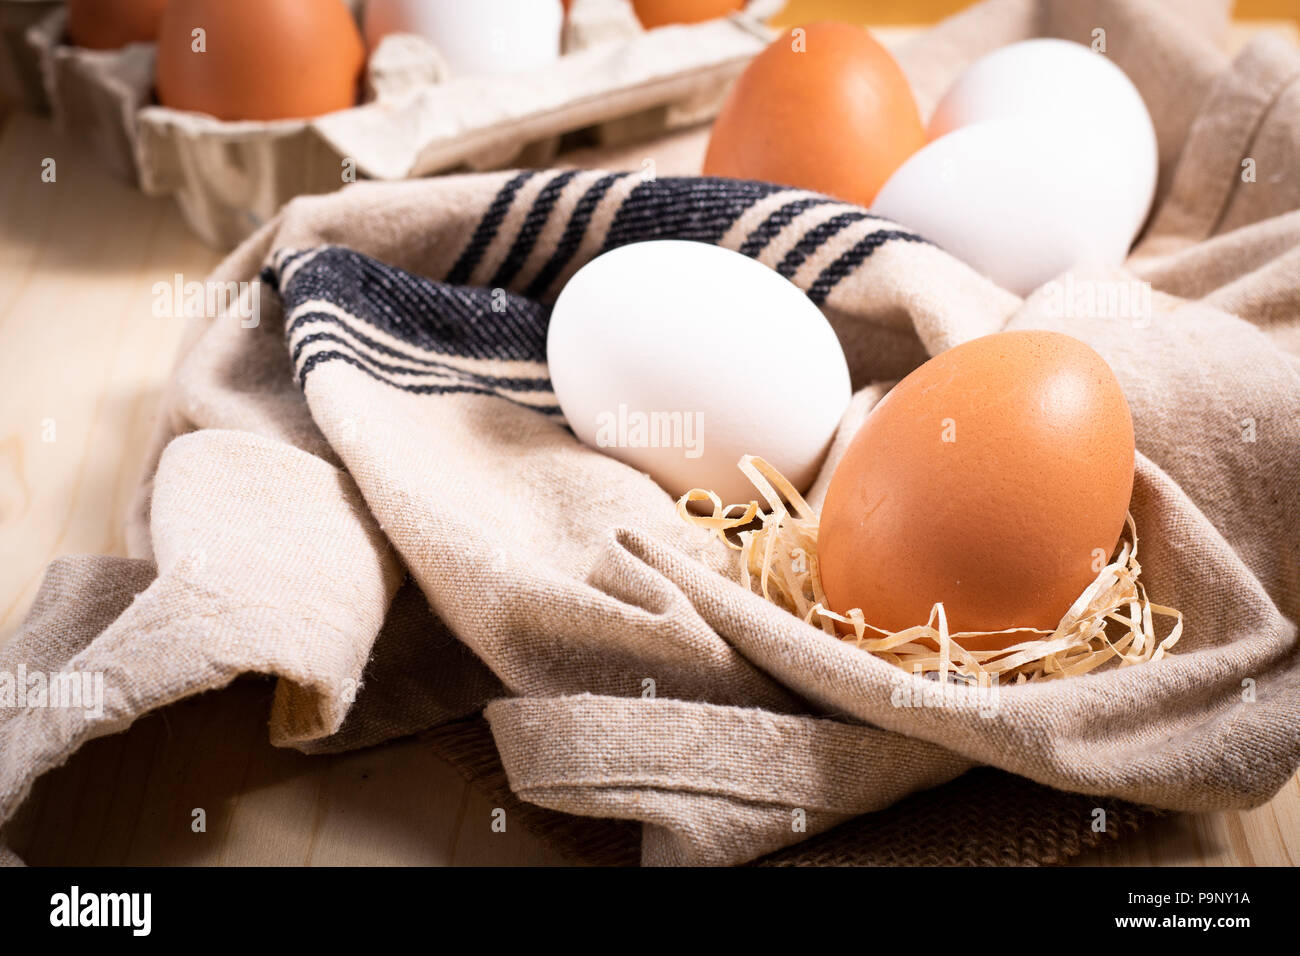 Cibo sano concetto fattoria organica fresche le uova bianche e uova cartoni Foto Stock